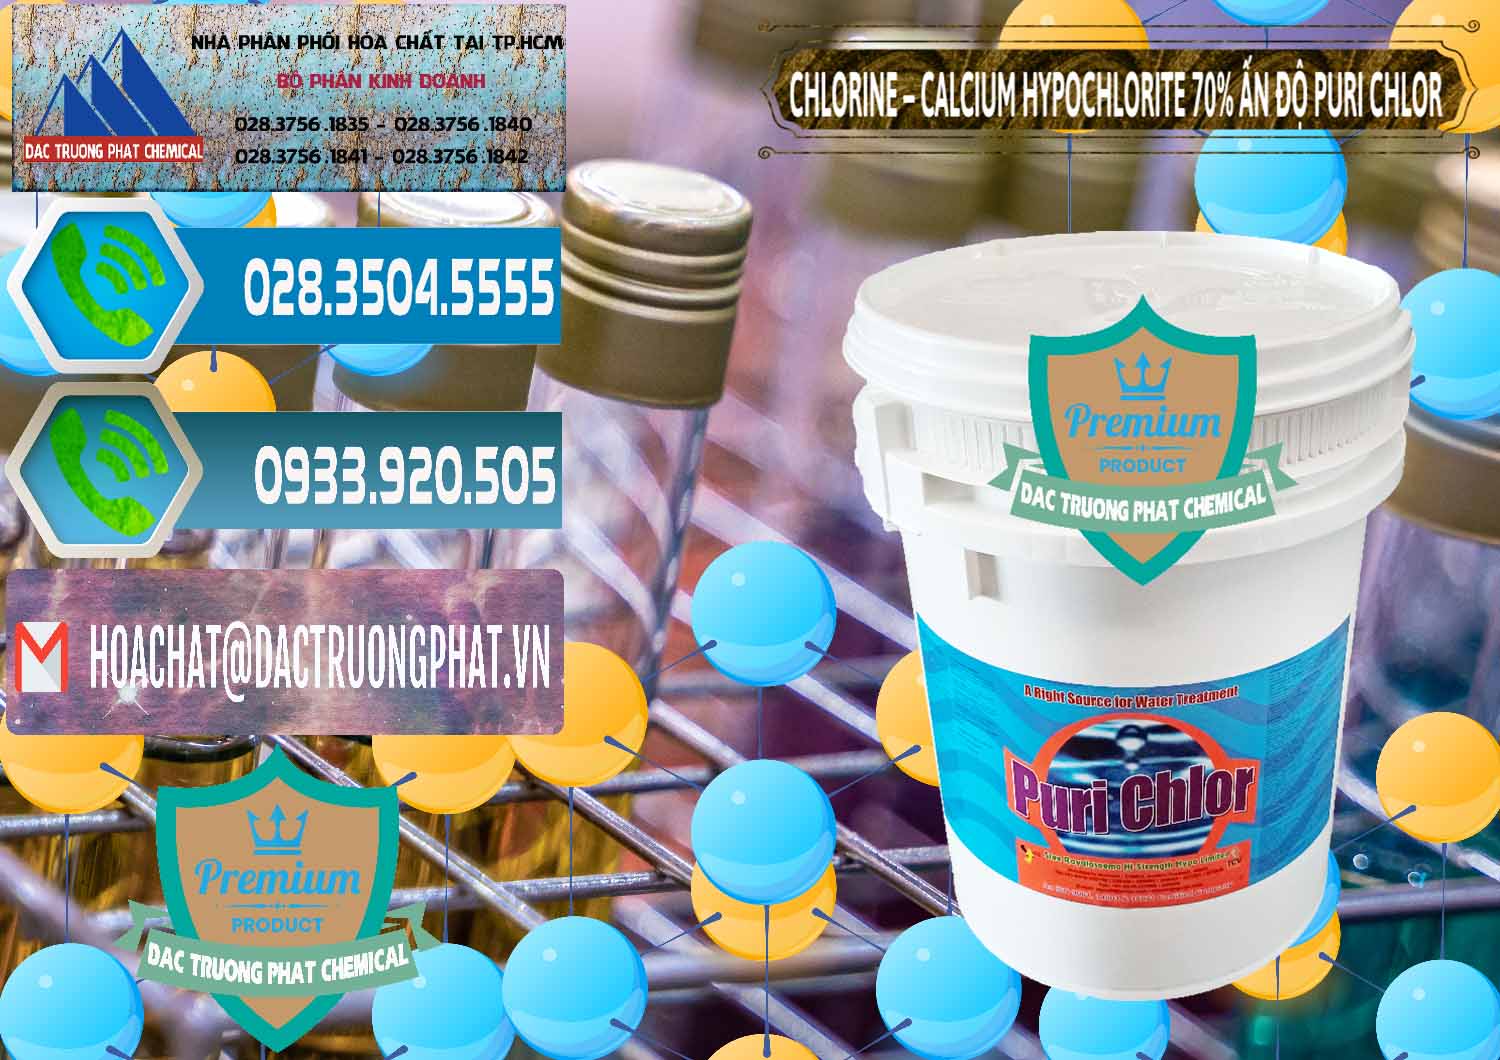 Nơi chuyên cung cấp & bán Chlorine – Clorin 70% Puri Chlo Ấn Độ India - 0123 - Công ty cung cấp _ phân phối hóa chất tại TP.HCM - congtyhoachat.net